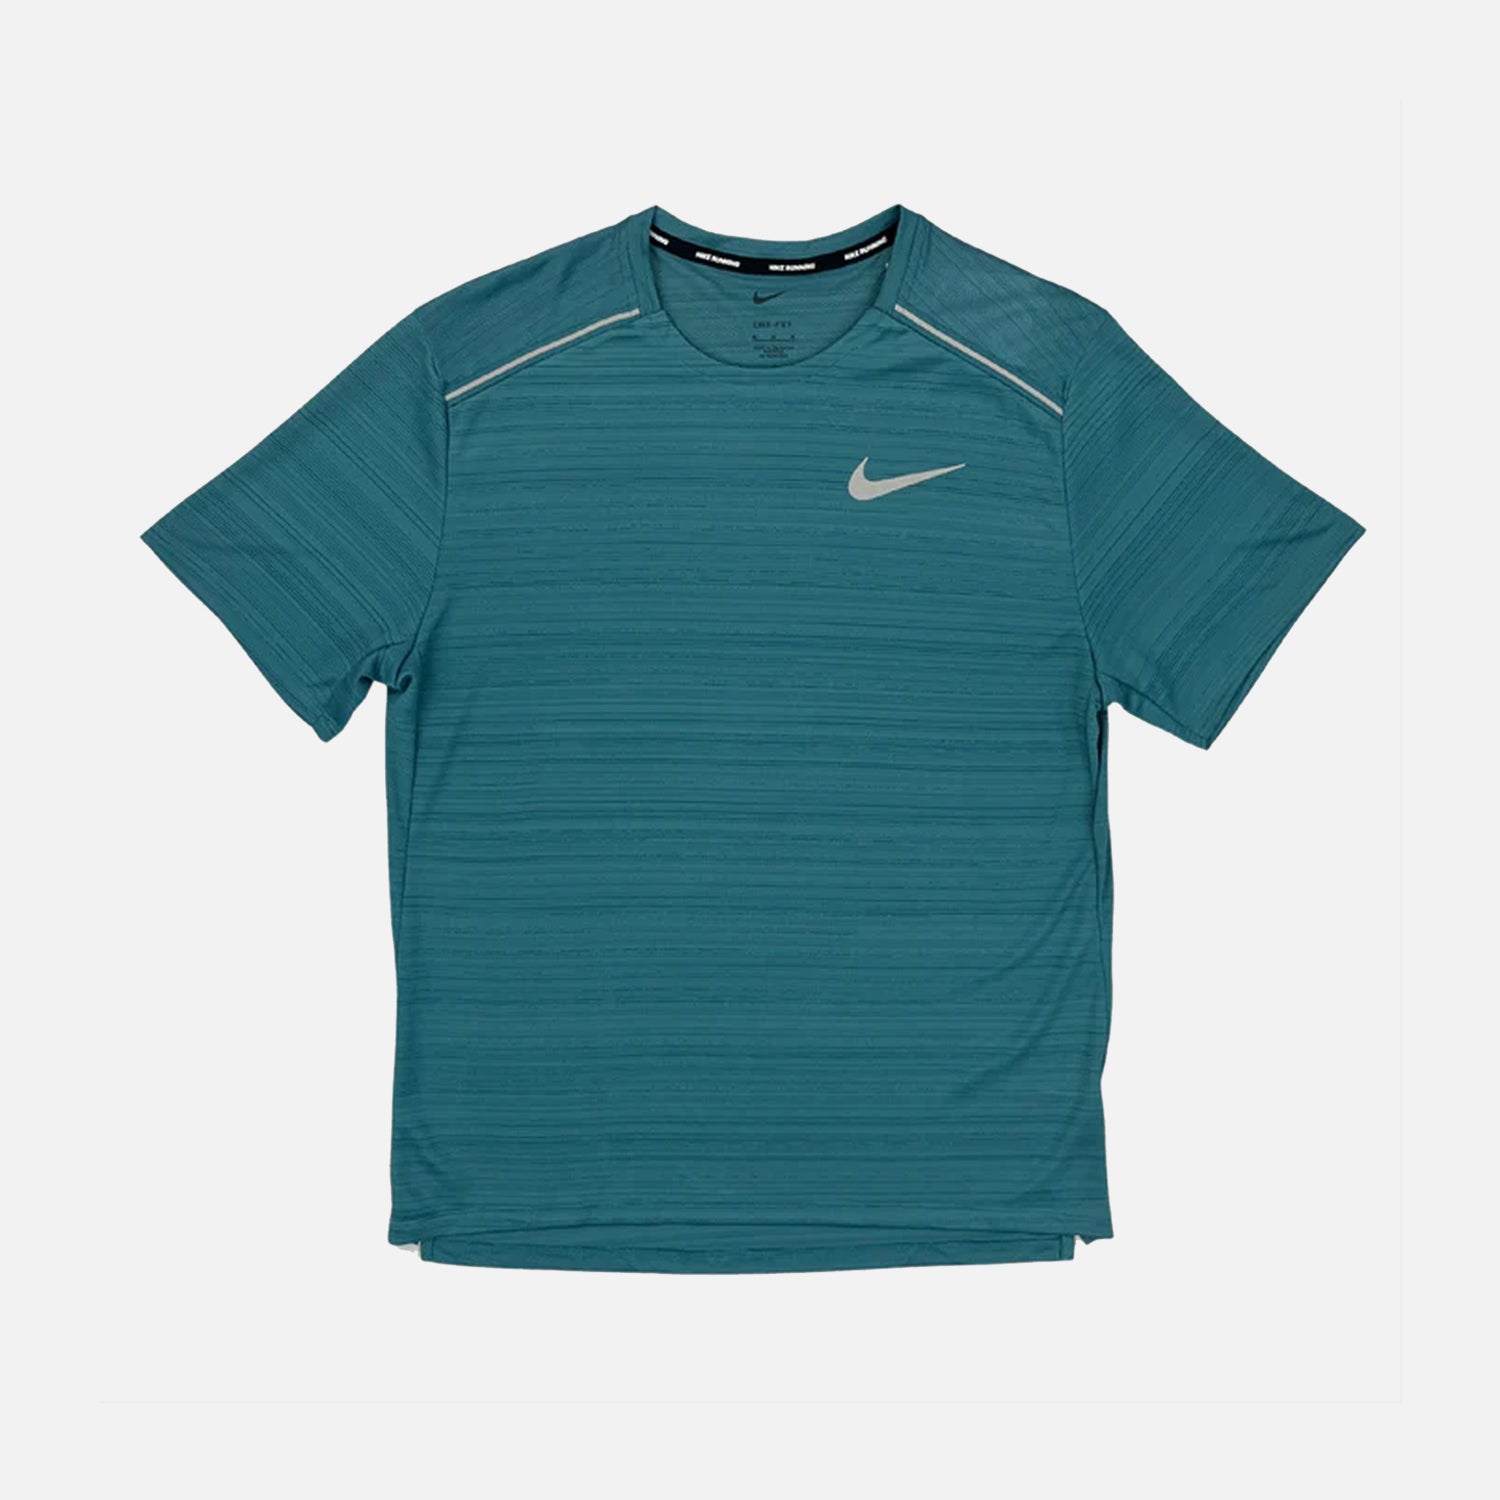 Nike Dri-Fit Miler 1.0 T-Shirt - Mineral Teal